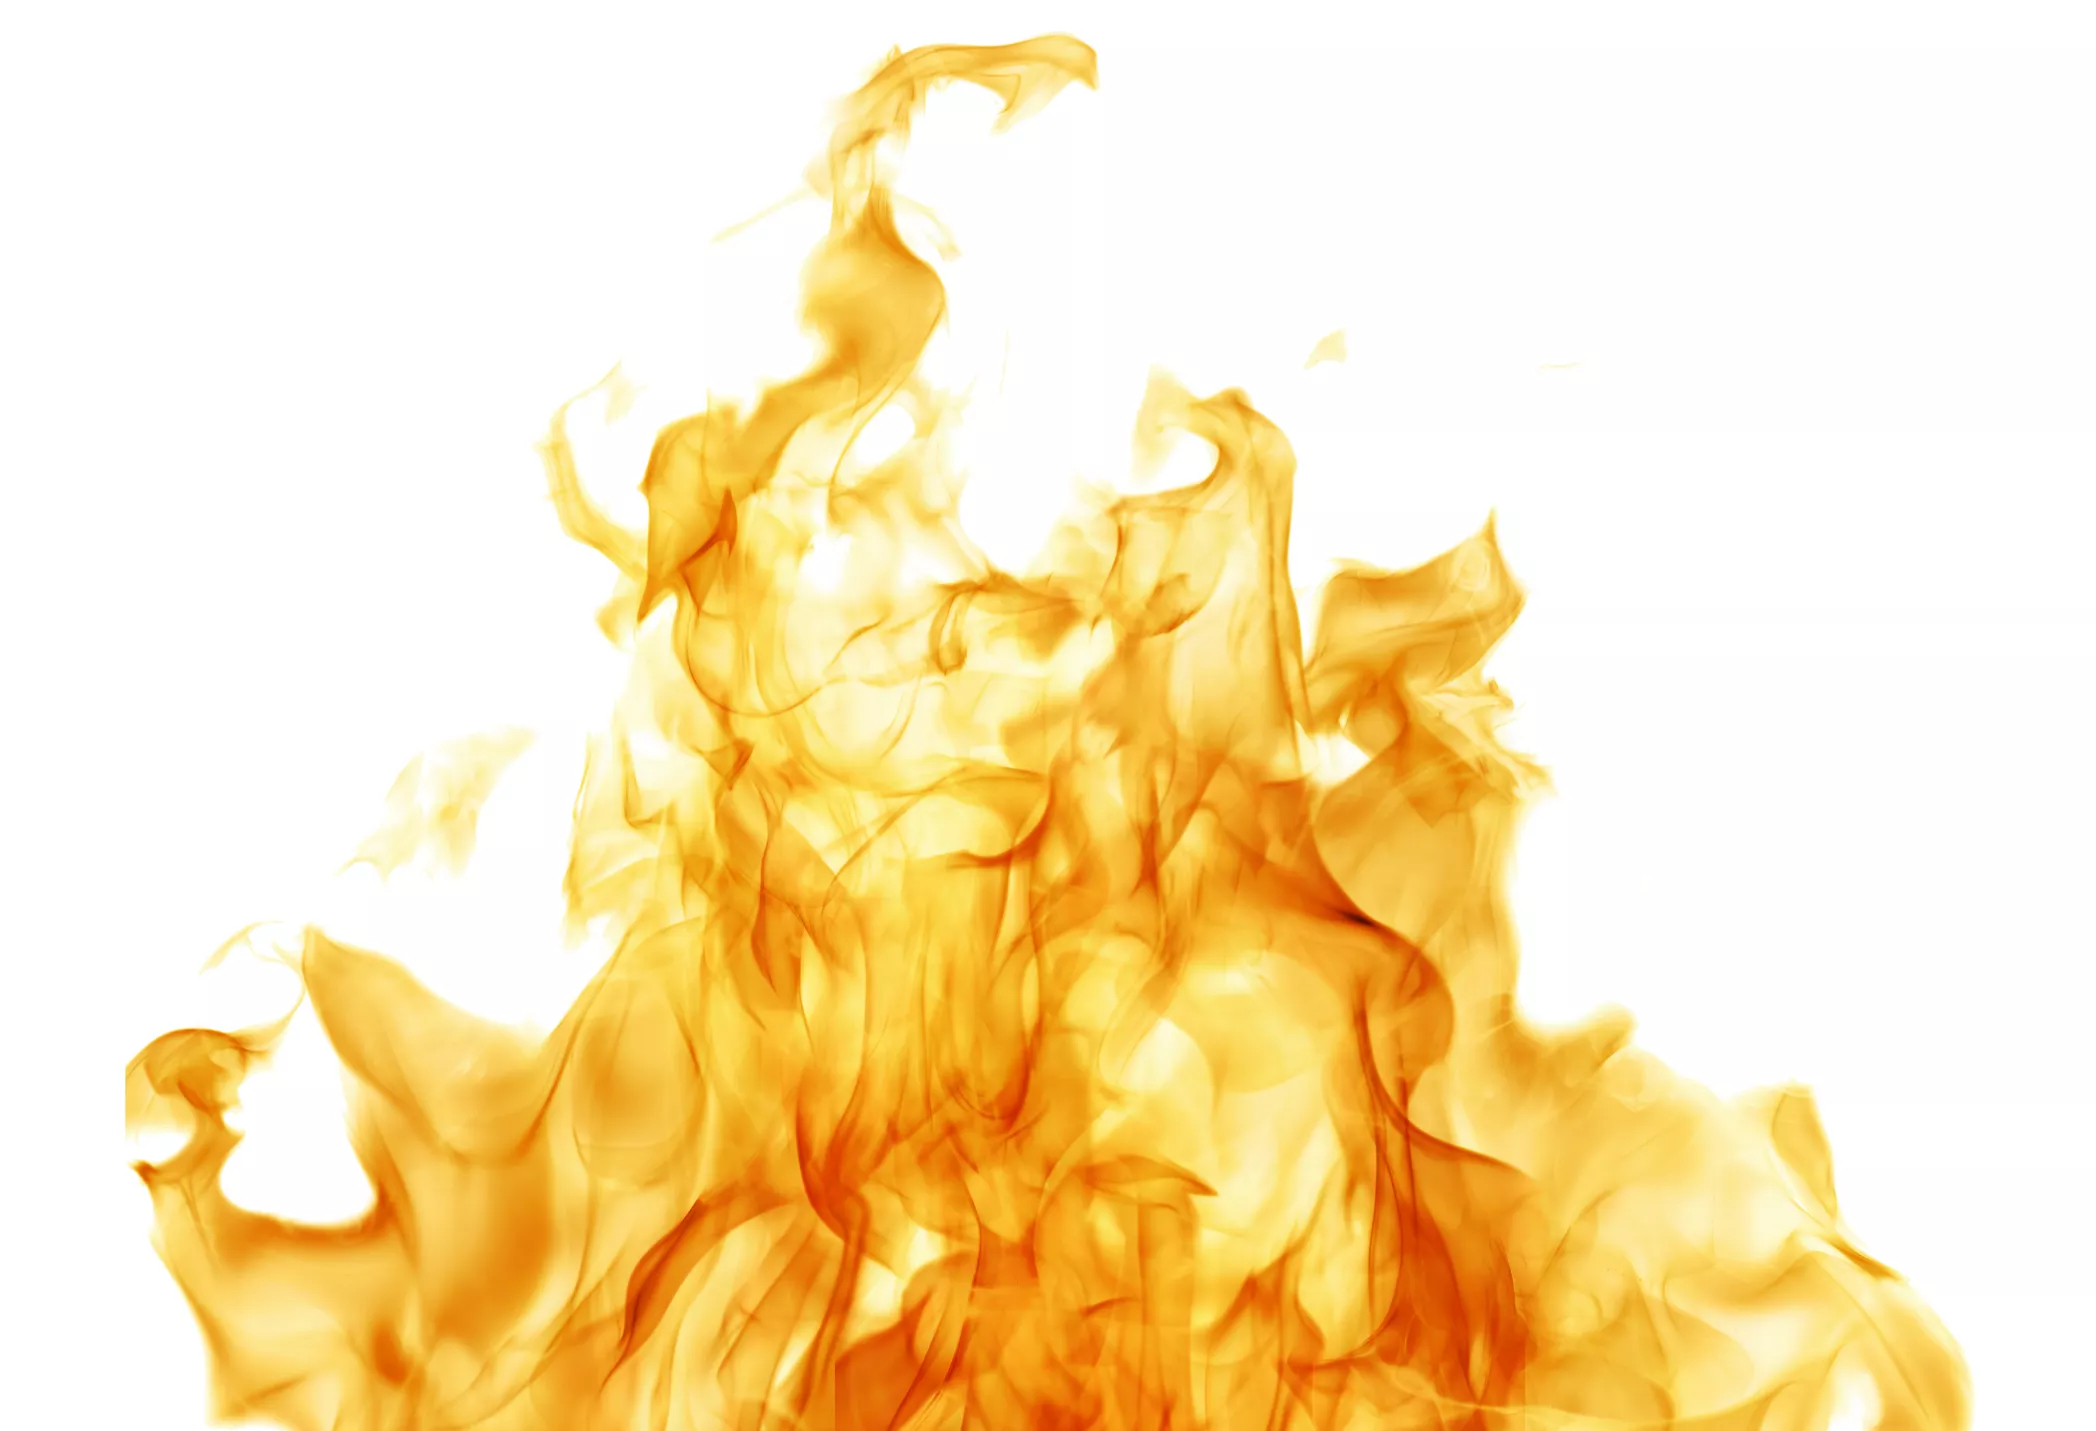 El foc ha estat un element inspirador per molts compositors